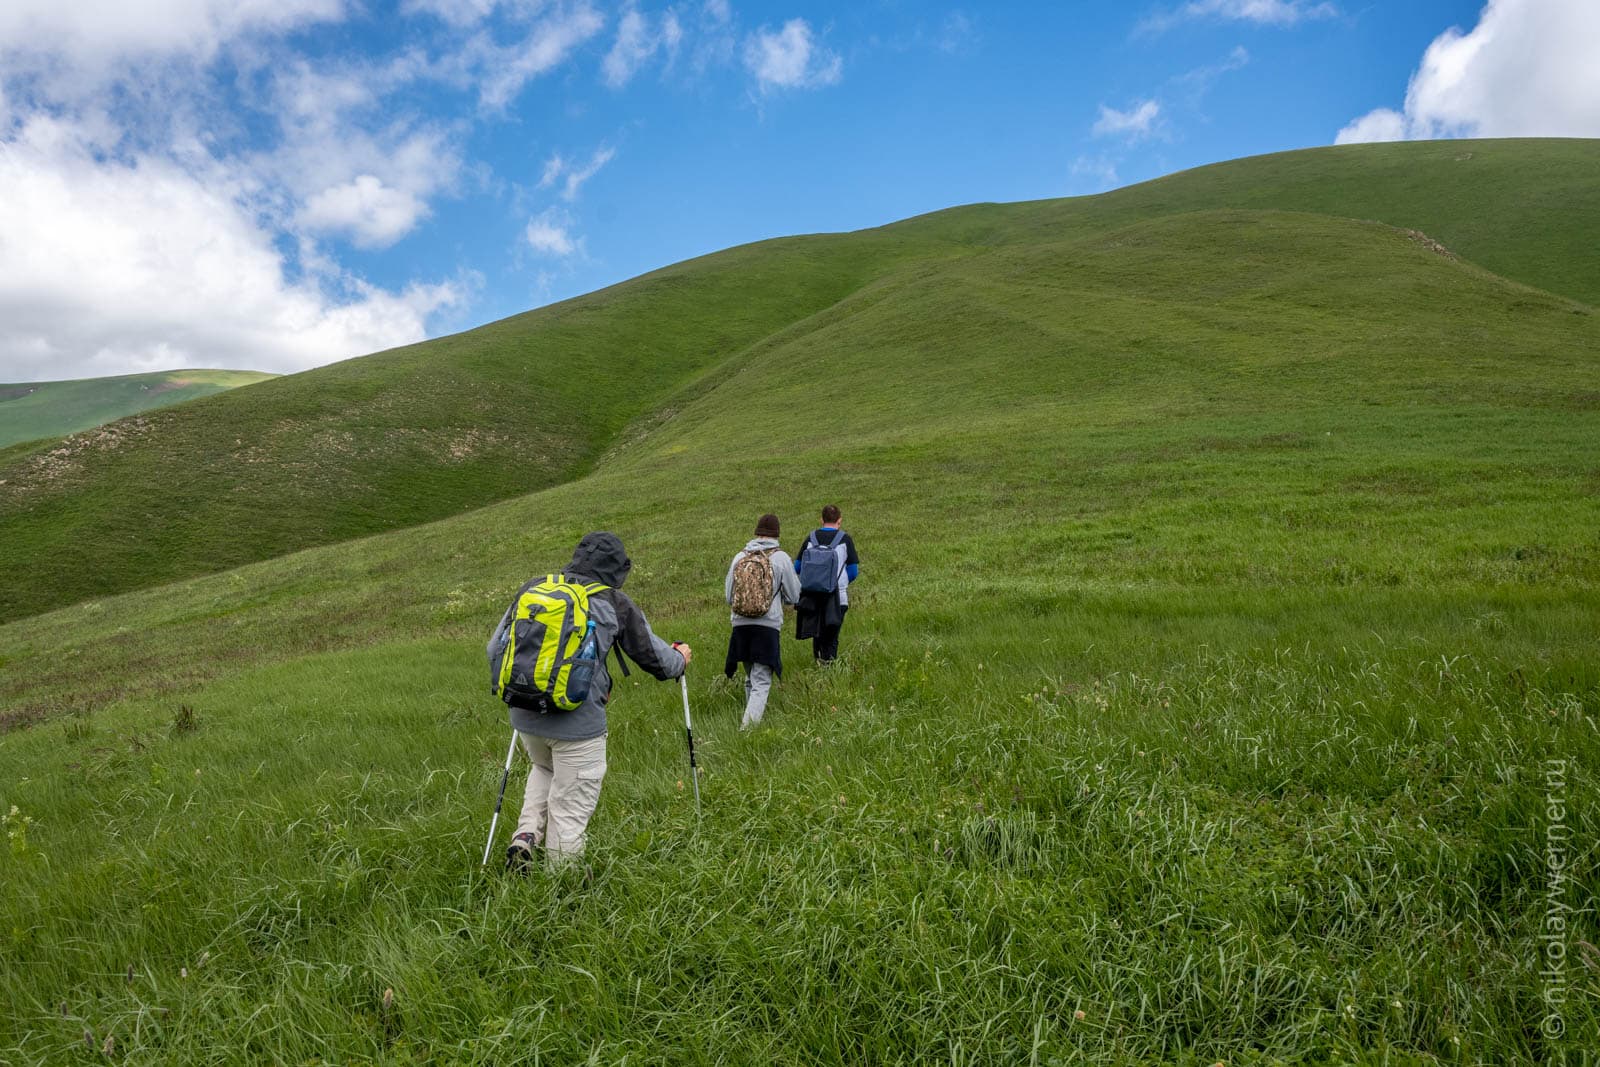 Группа туристов поднимается покрутому, укрытому травой, равномерно зеленому склону